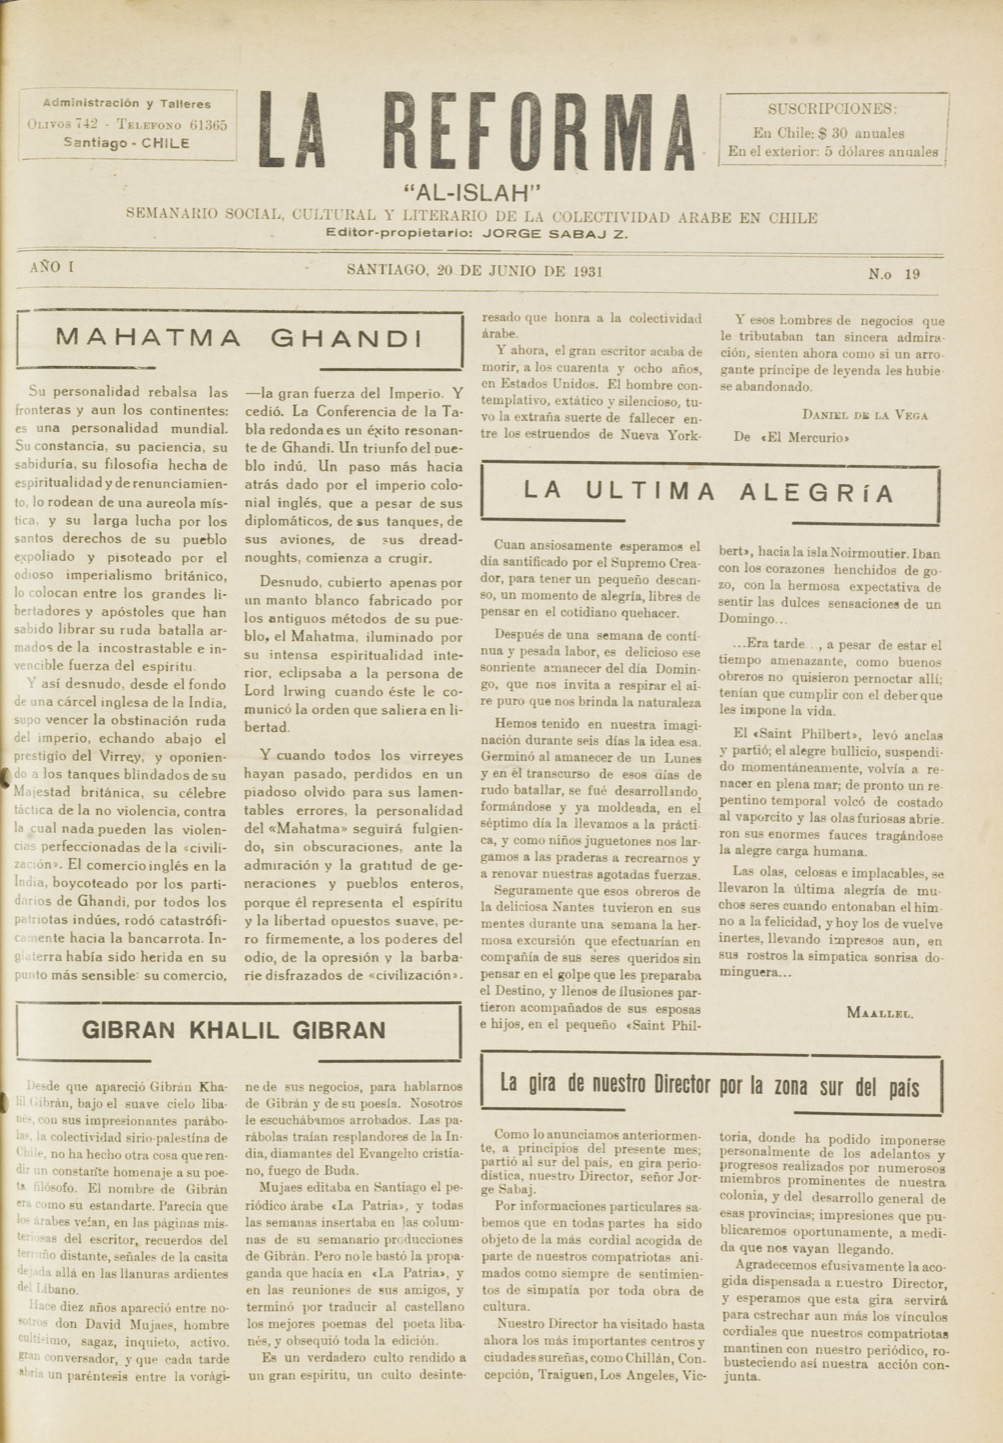 I.H.A., "Gibran Khalil Gibran", La Reforma, Jun 20, 1931, pp. 1,3.